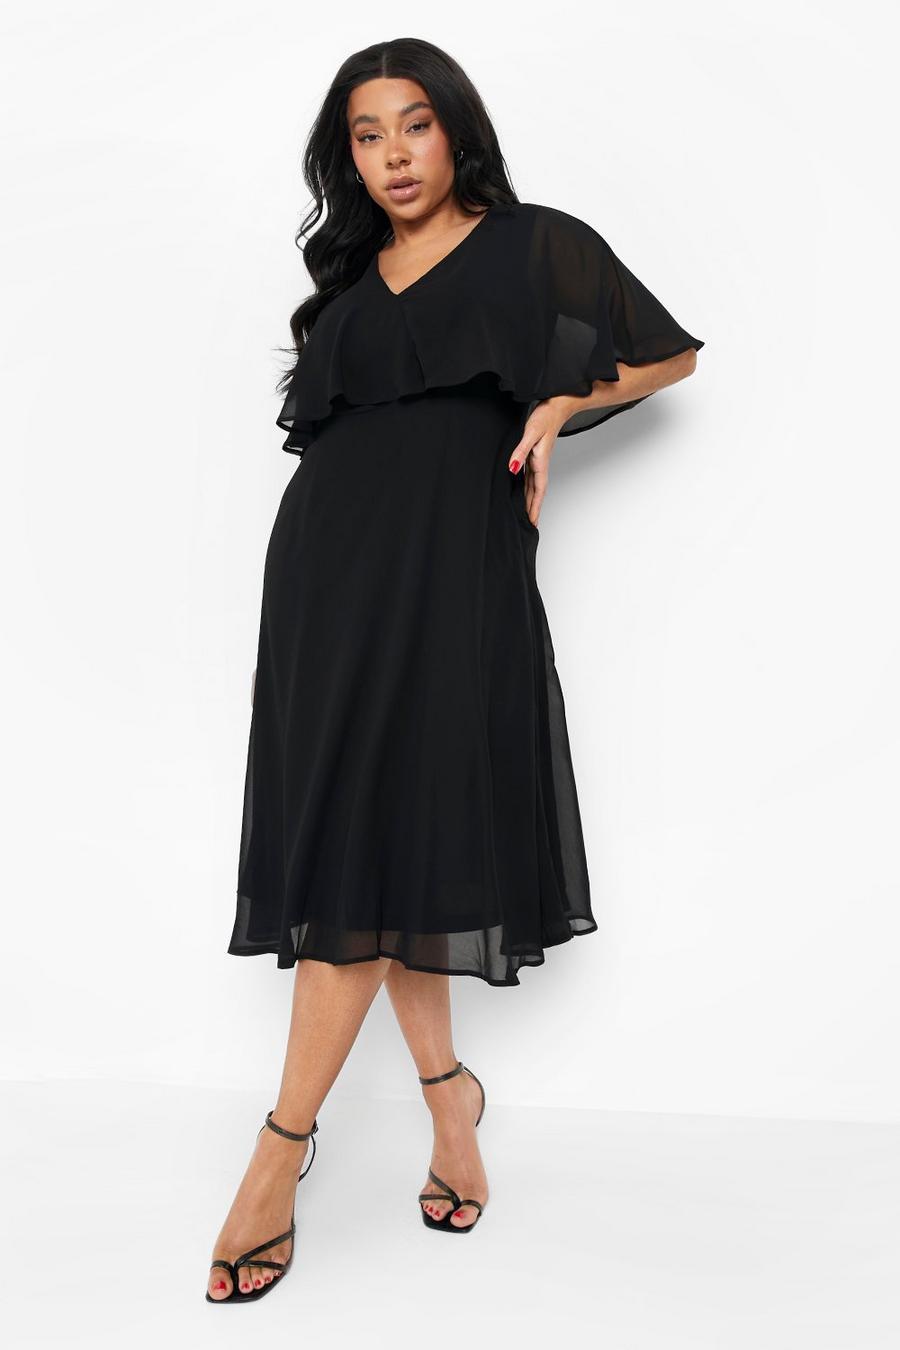 שחור שמלת סקייטר מידי מעטפת משיפון עם שרוולי שכמייה למידות גדולות